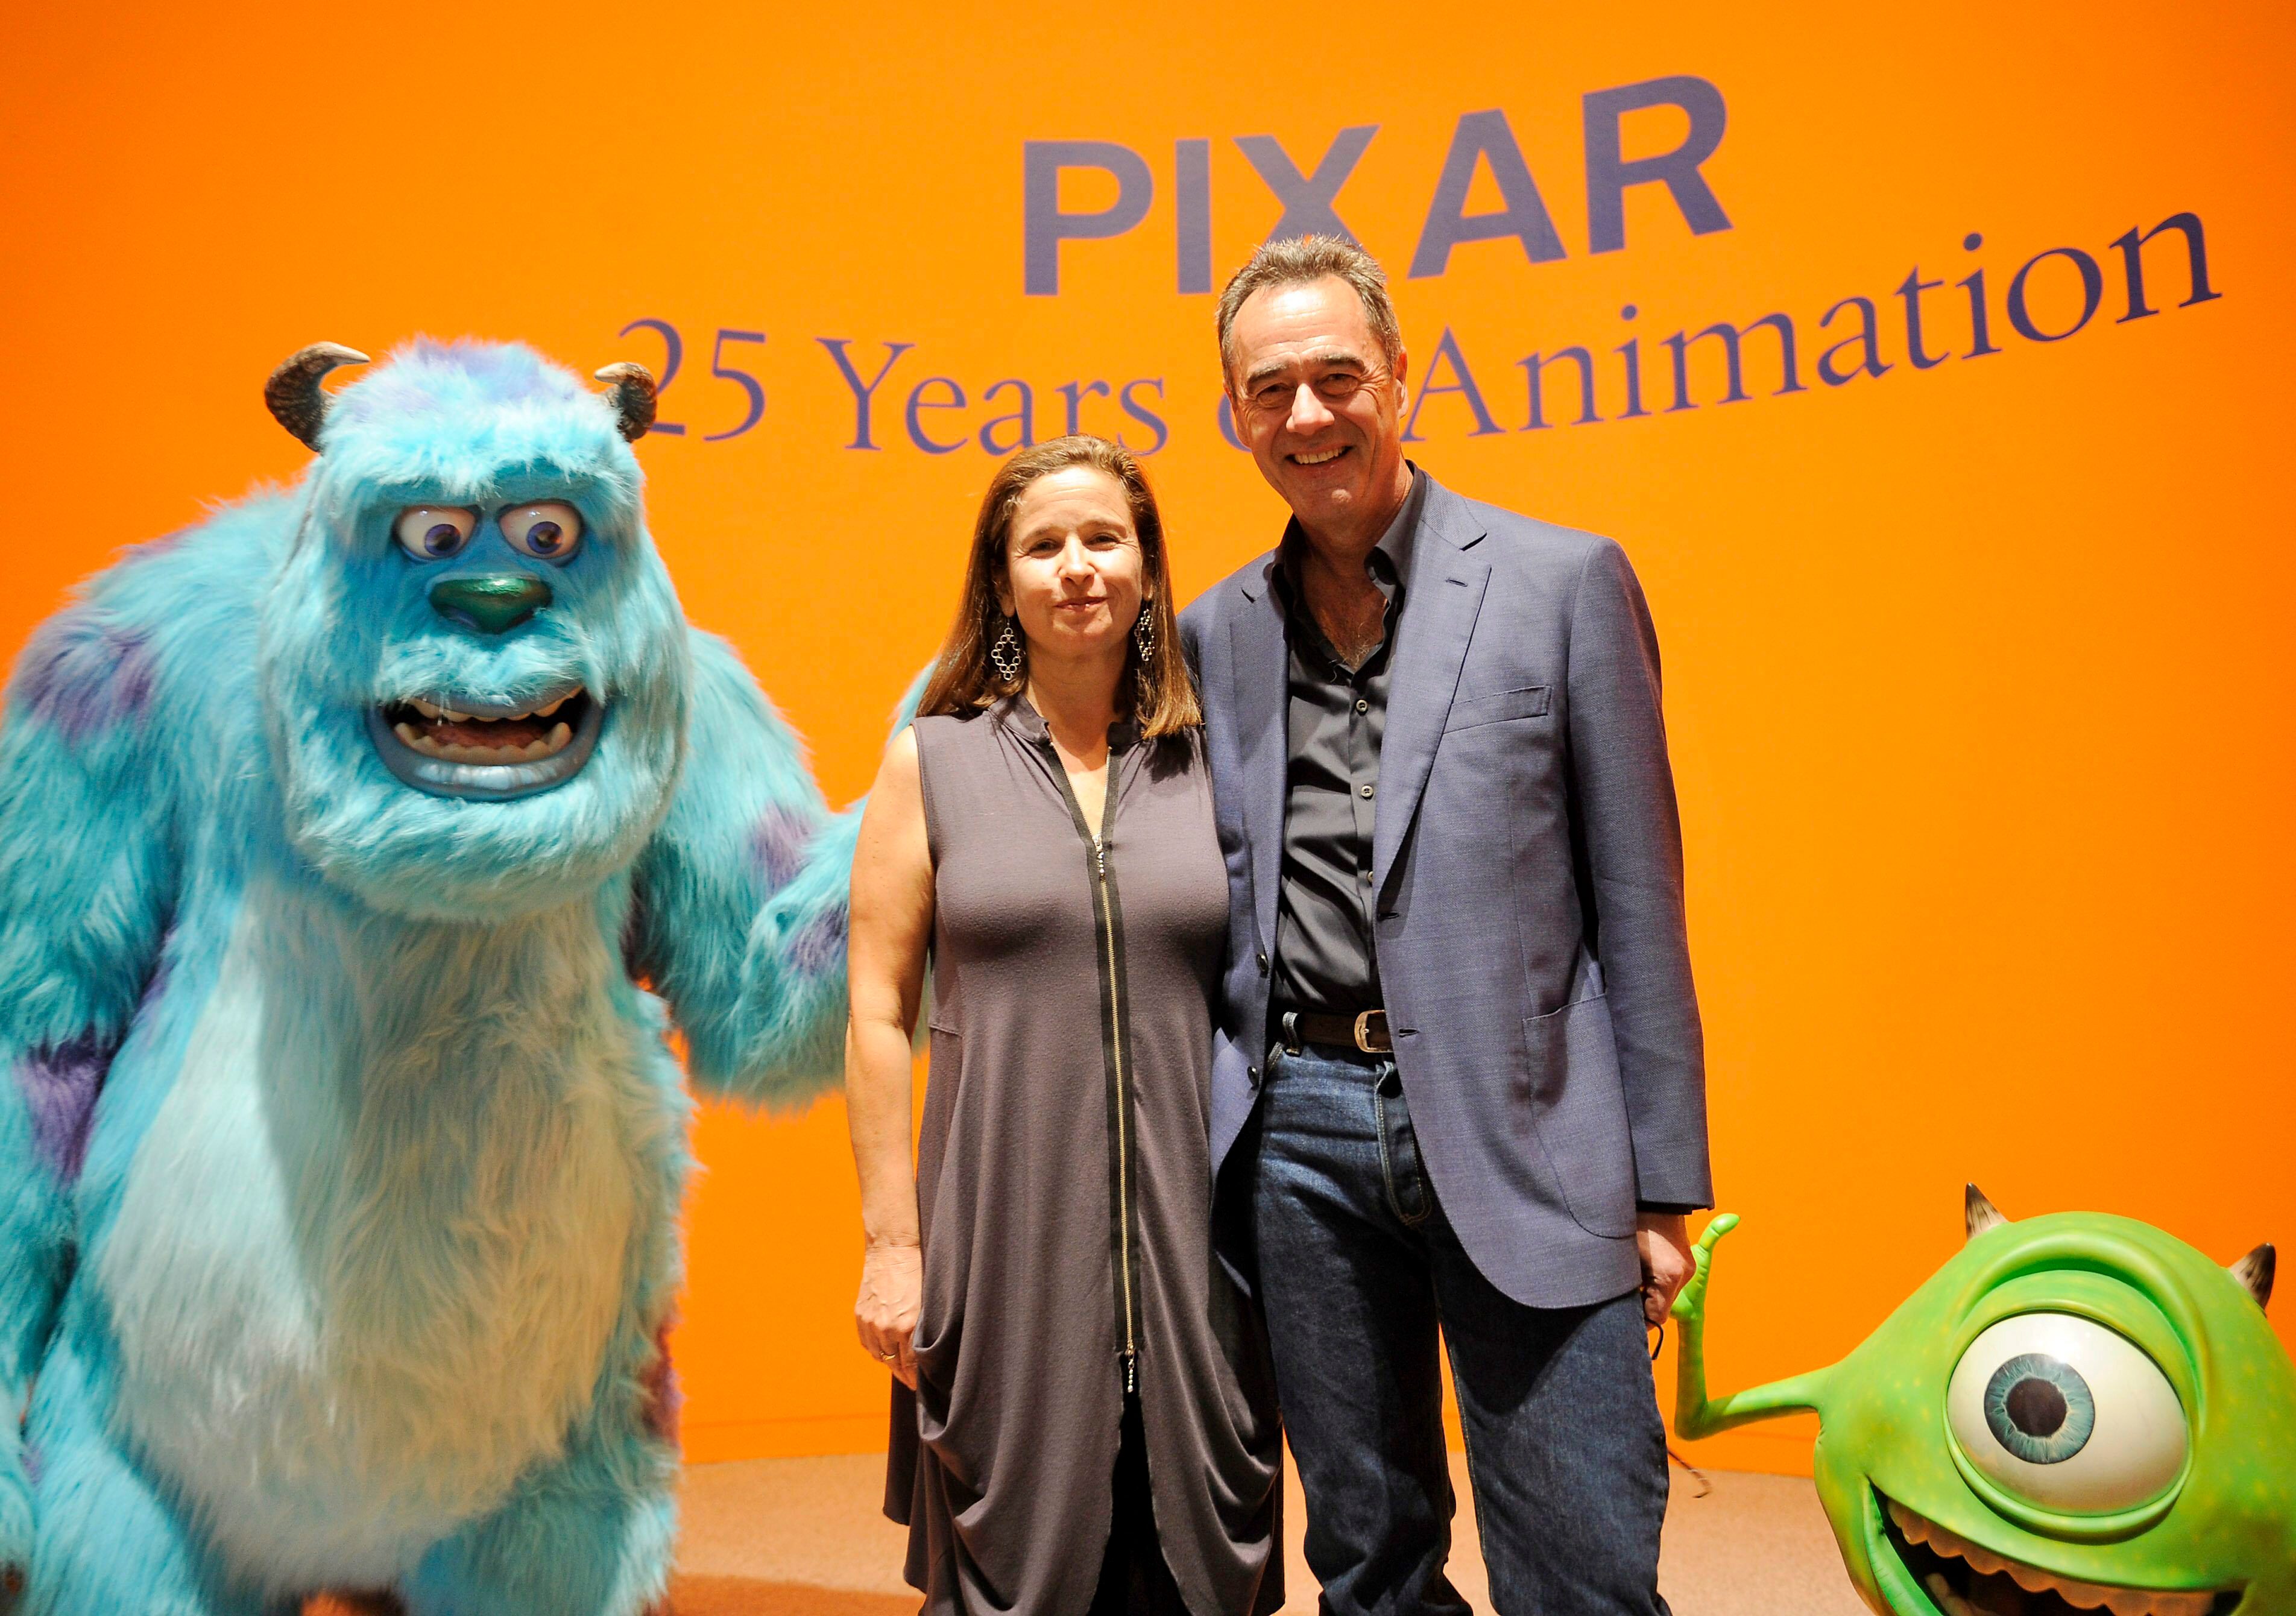 Monstruos S.A.': Esta es la razón por la que Pixar hizo una precuela en  lugar de una secuela - Noticias de cine 